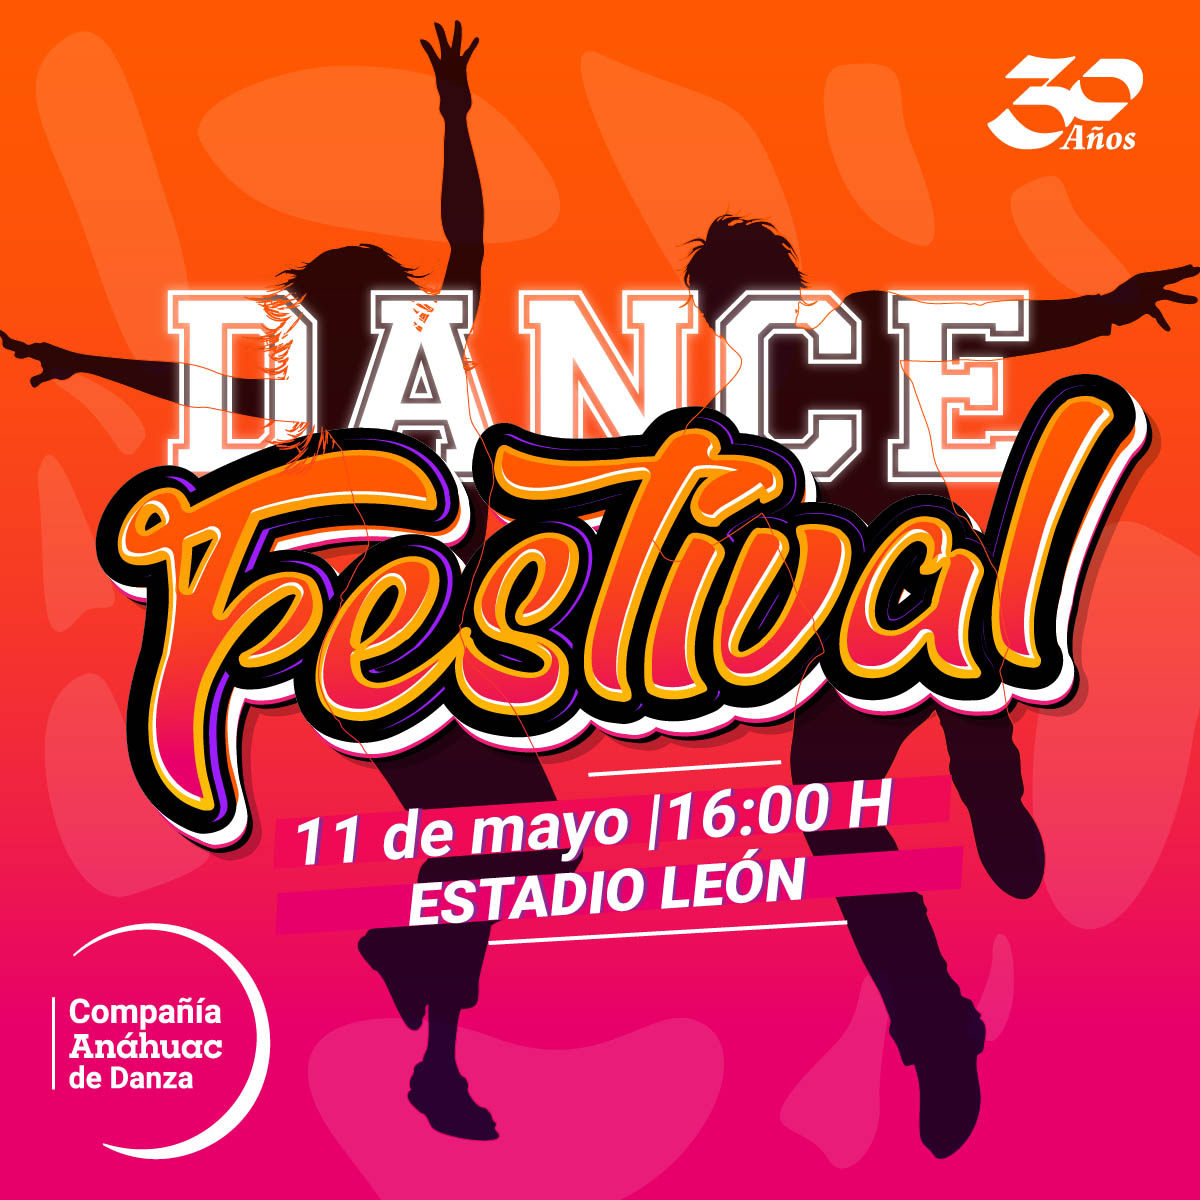 Dance Festival